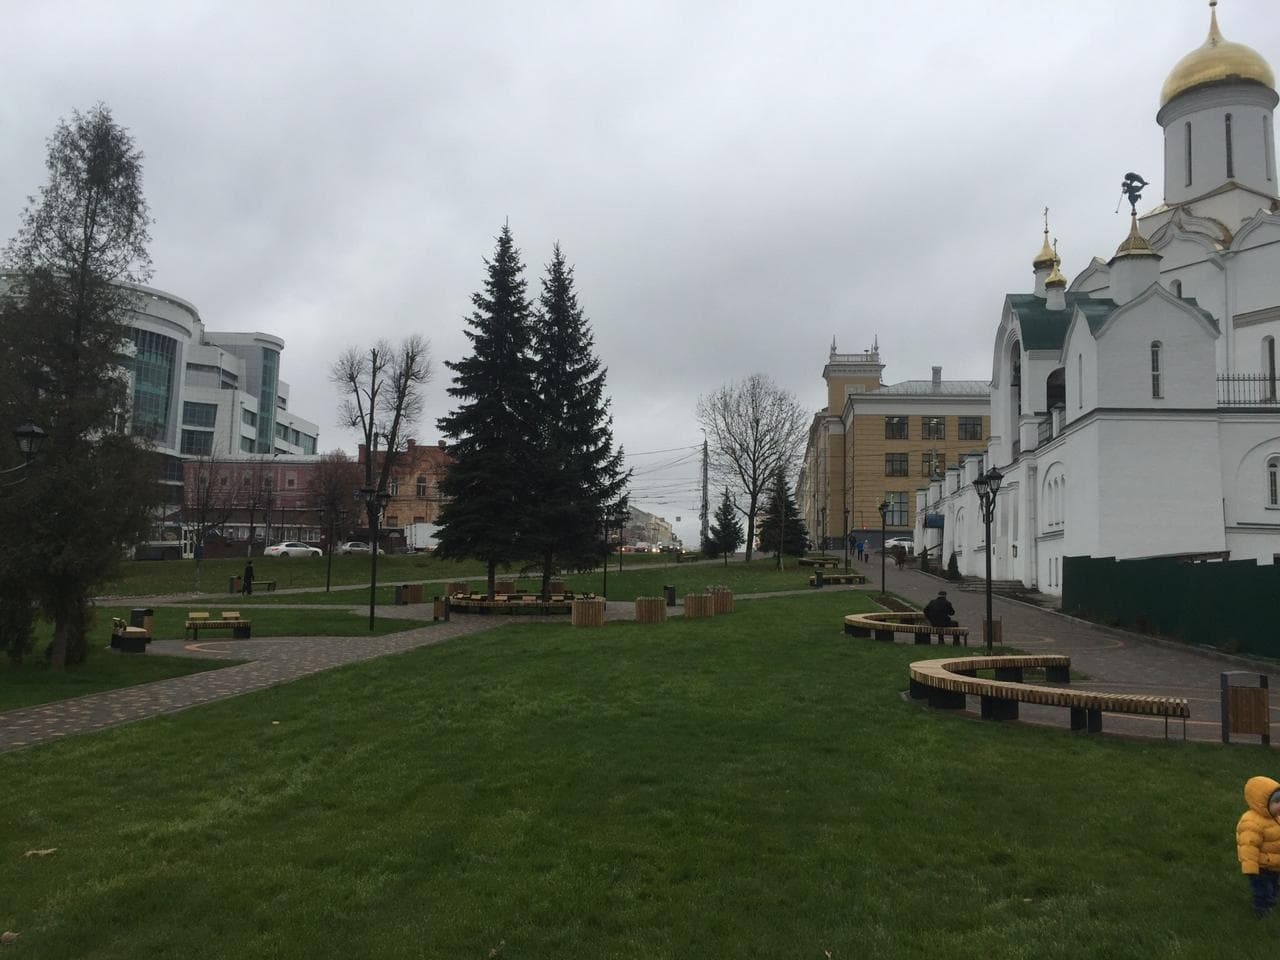 Троицкий Сквер, Иваново, Ивановская область (2018 год)